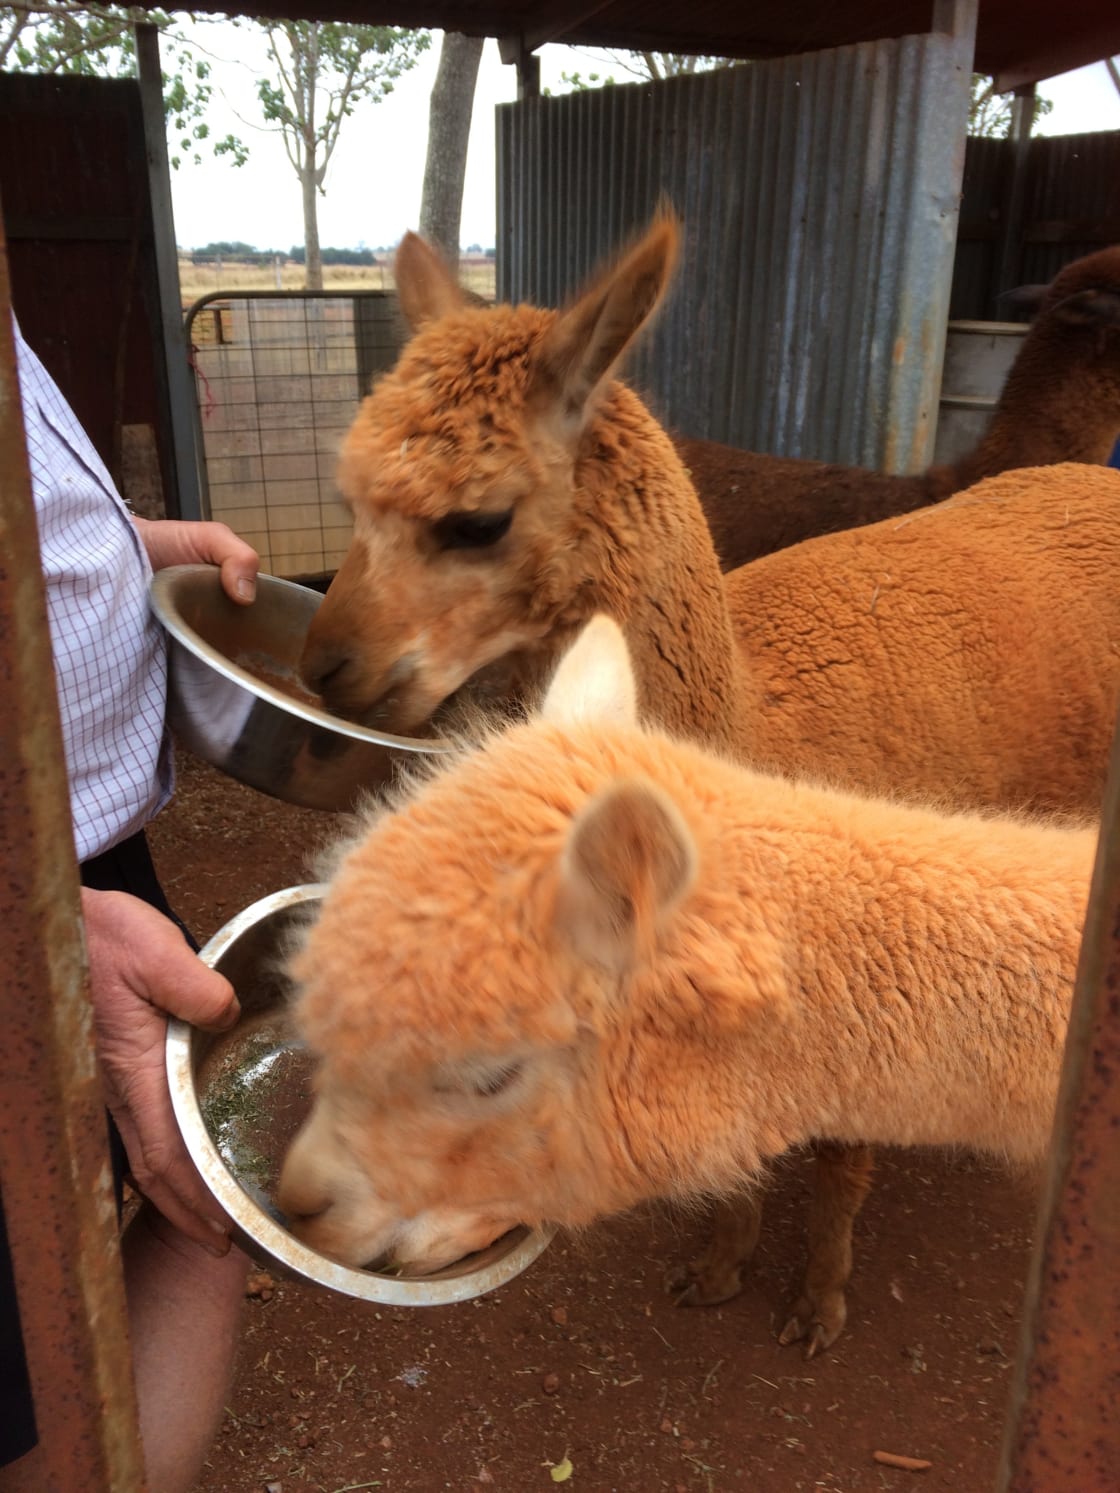 Feeding the alpacas.